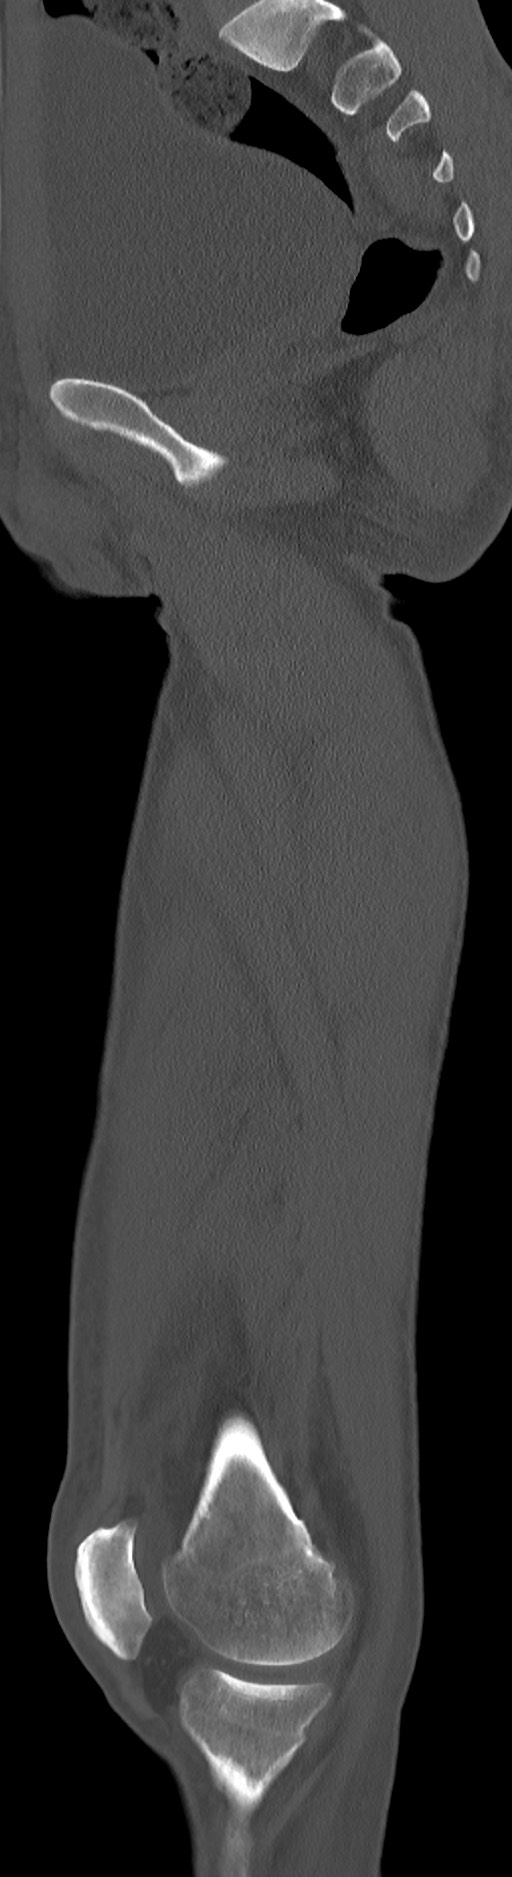 Chronic osteomyelitis (with sequestrum) (Radiopaedia 74813-85822 C 63).jpg